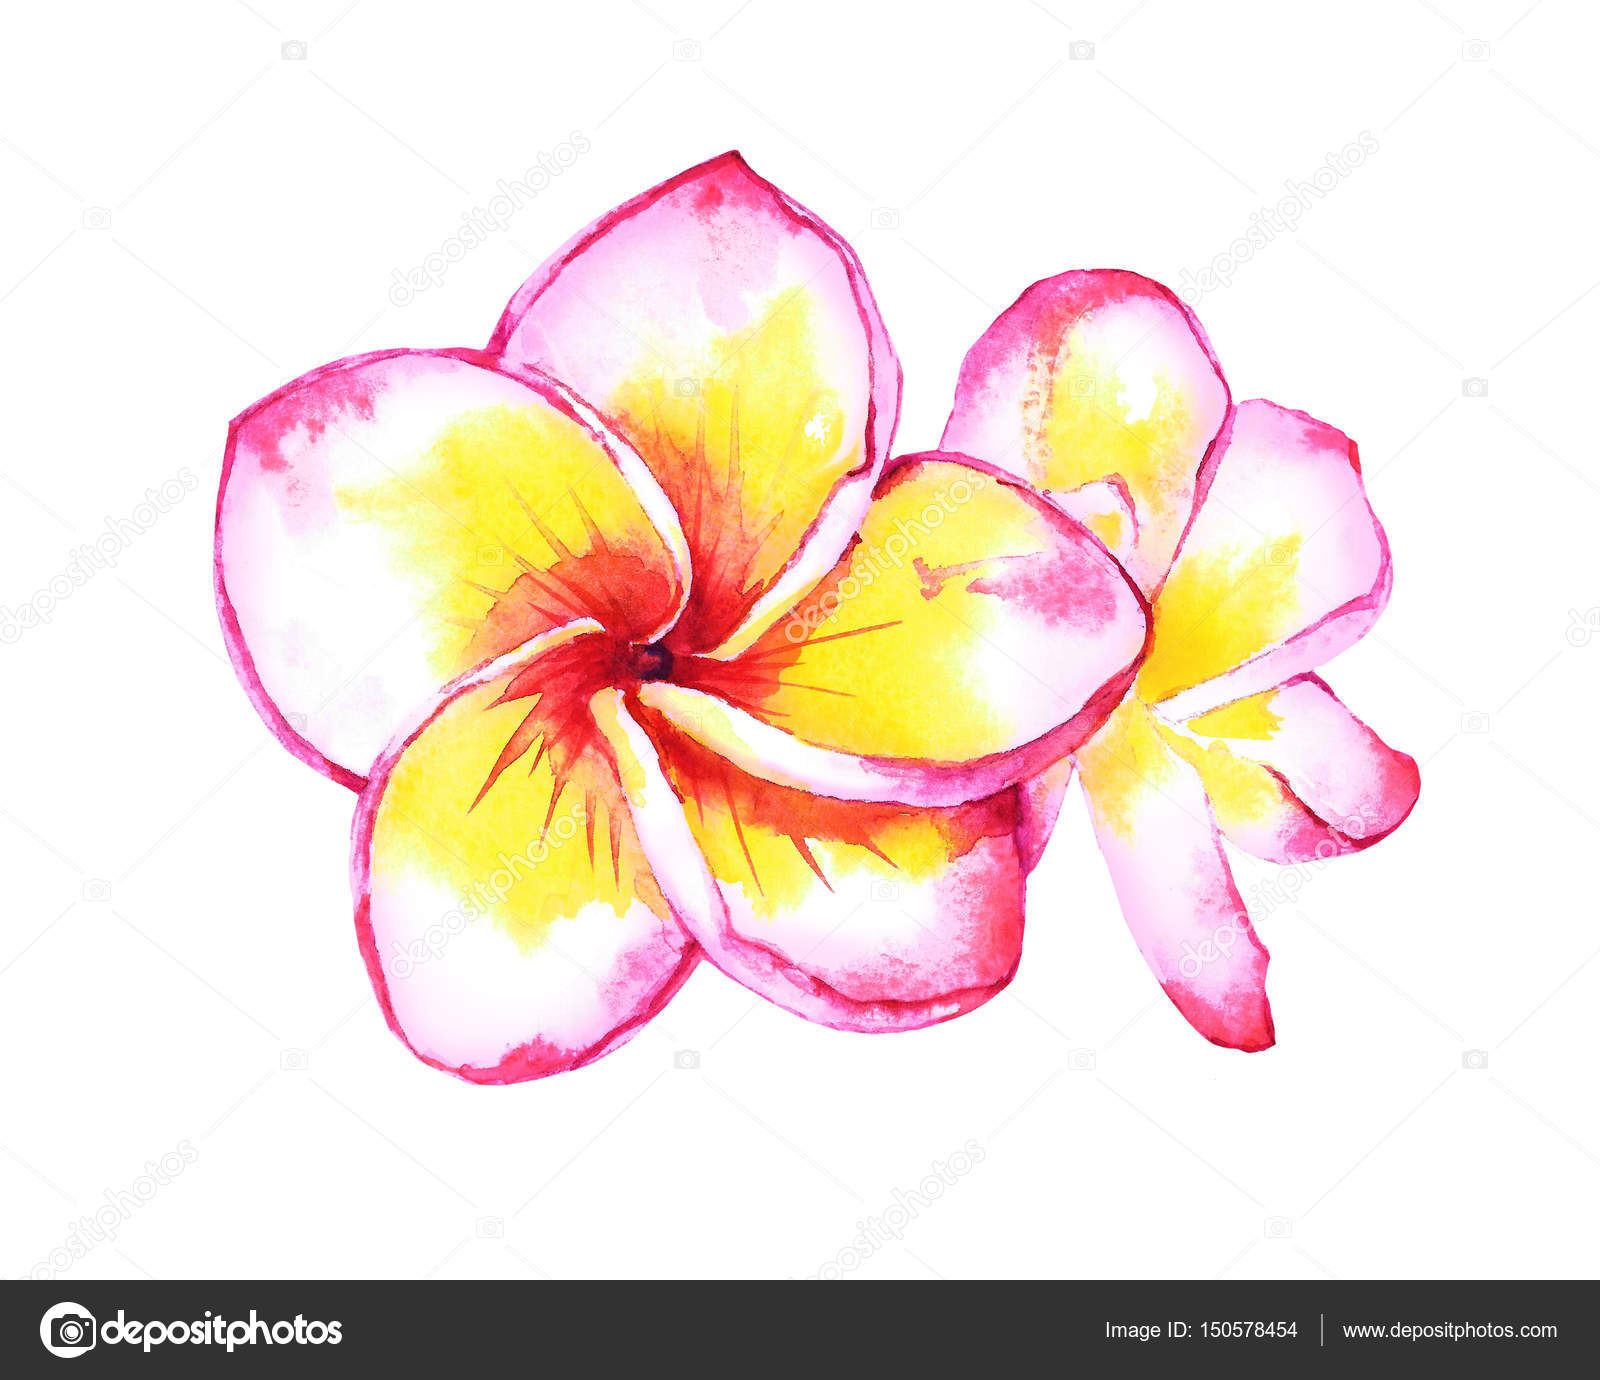 すべての美しい花の画像 ベスト50 プルメリア ハワイ 花 イラスト